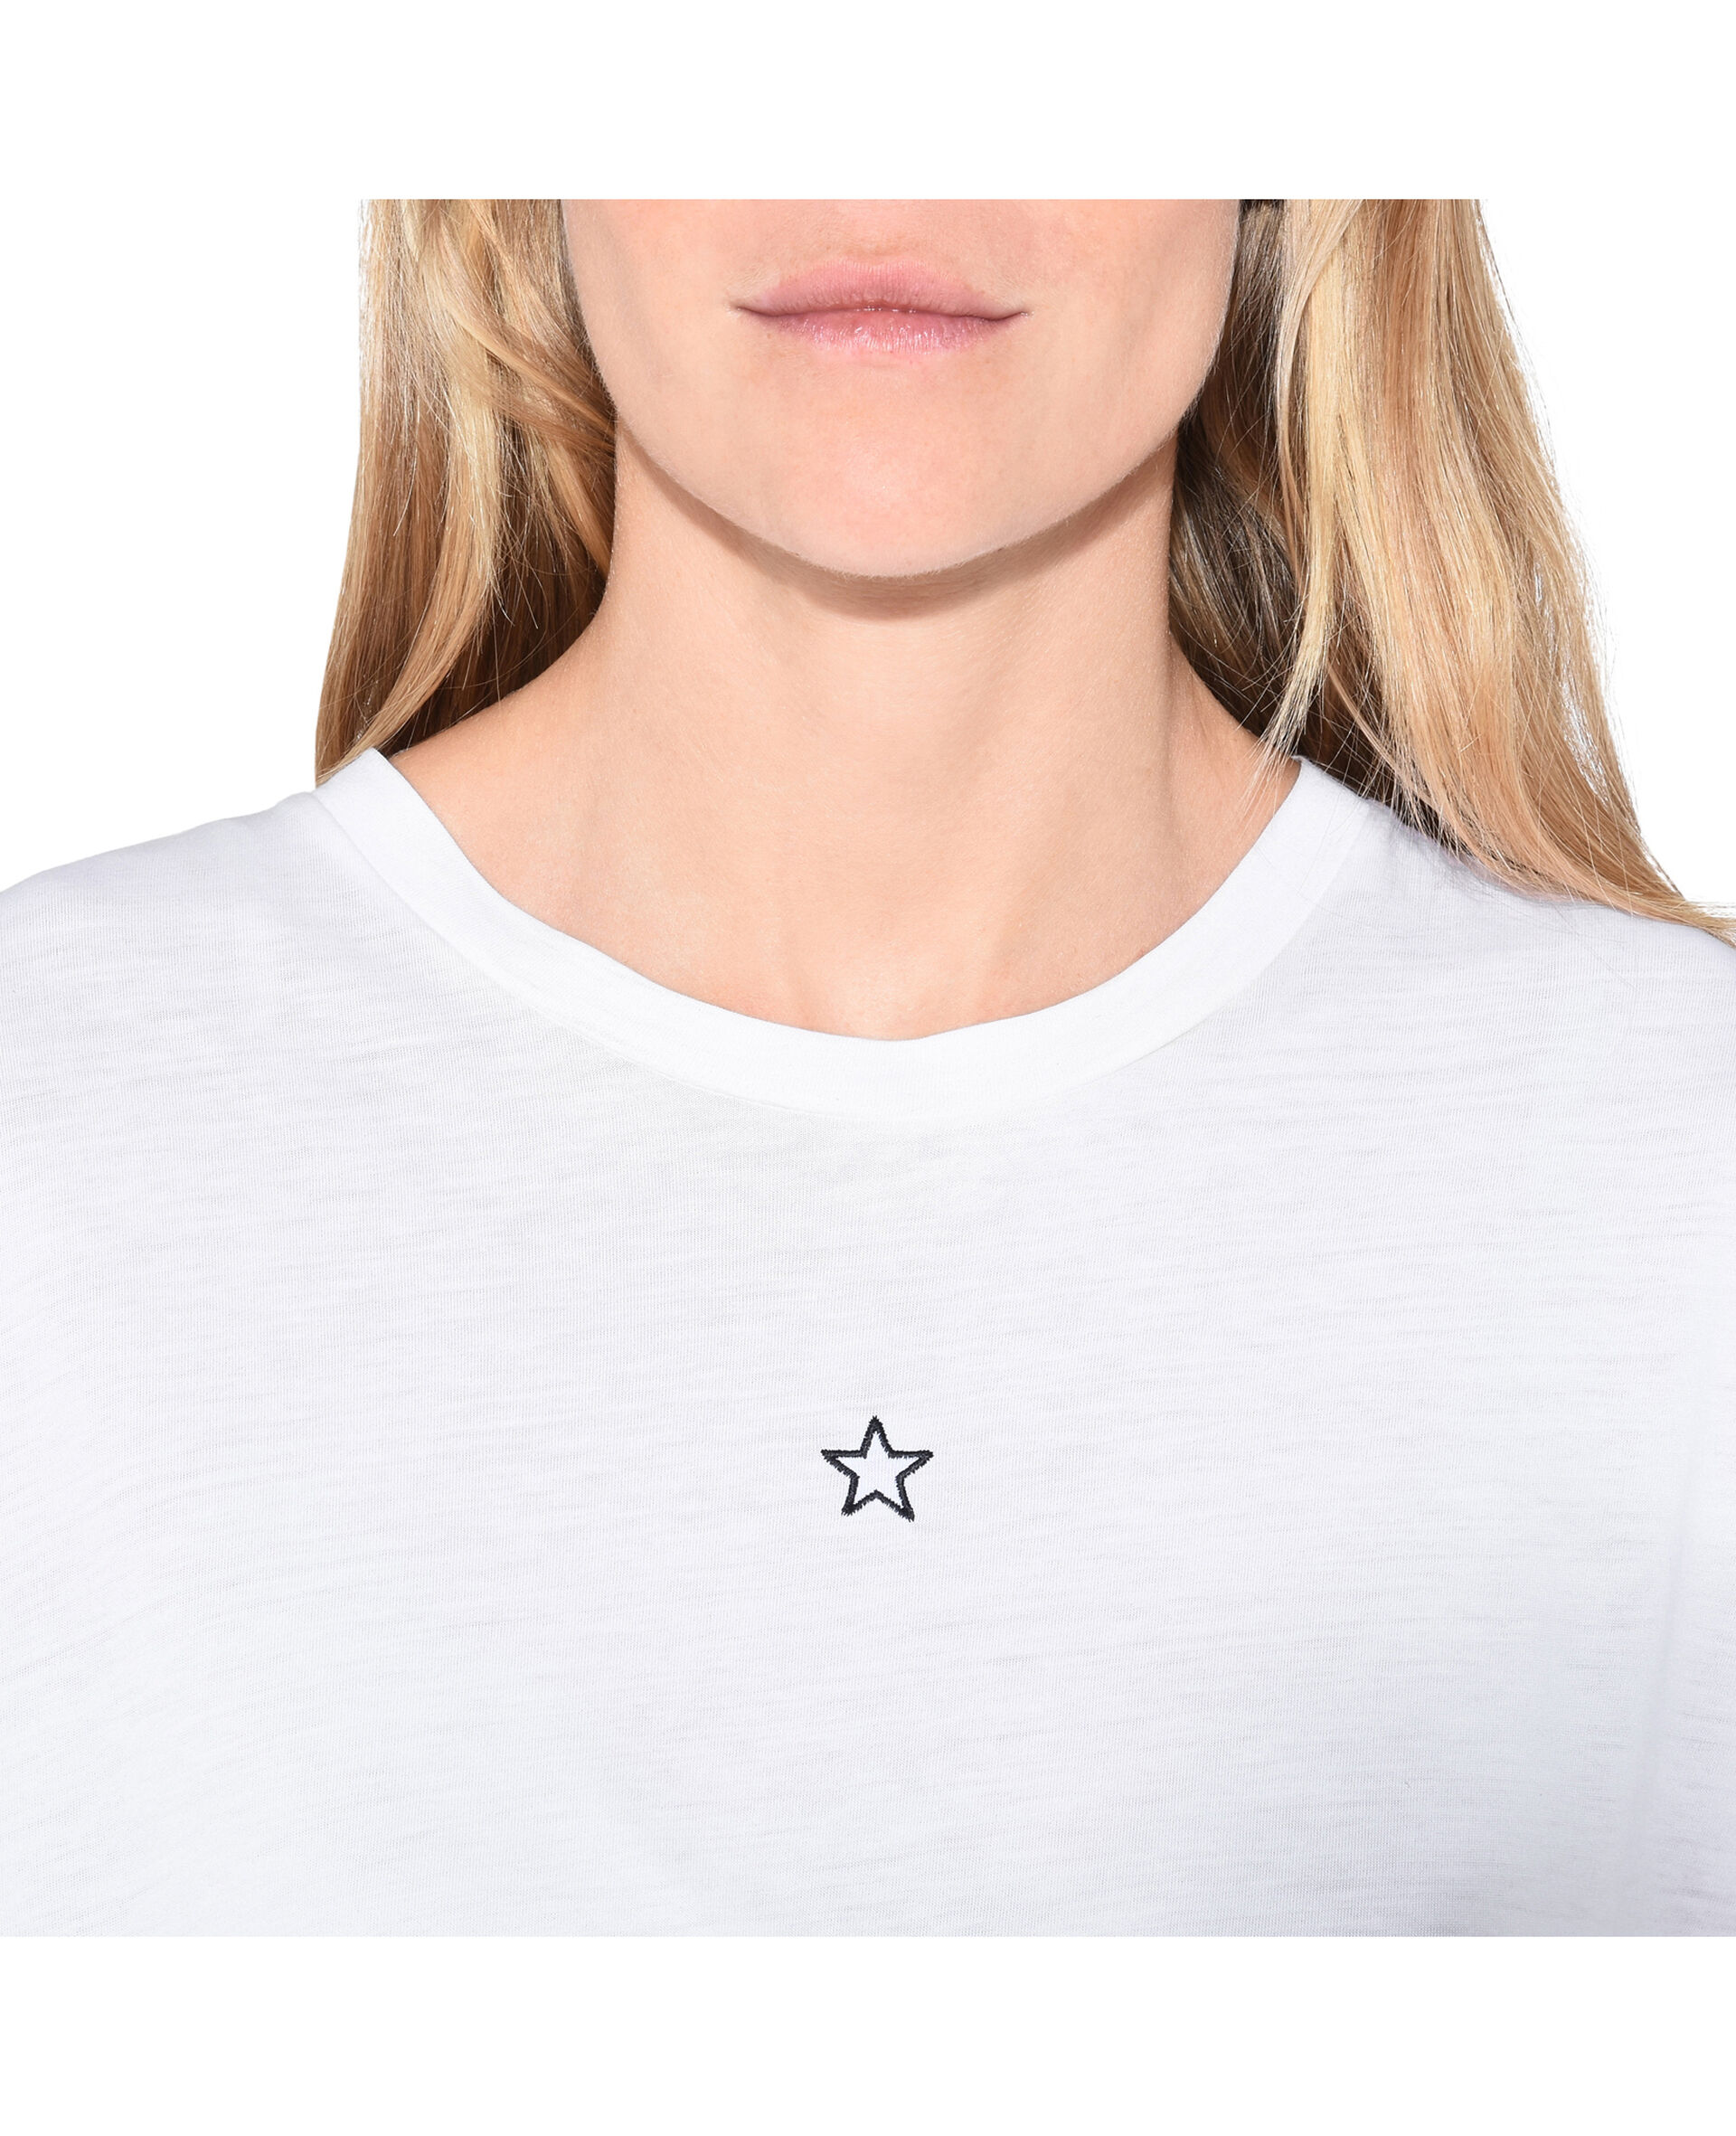 Mini Star T-Shirt-White-large image number 3